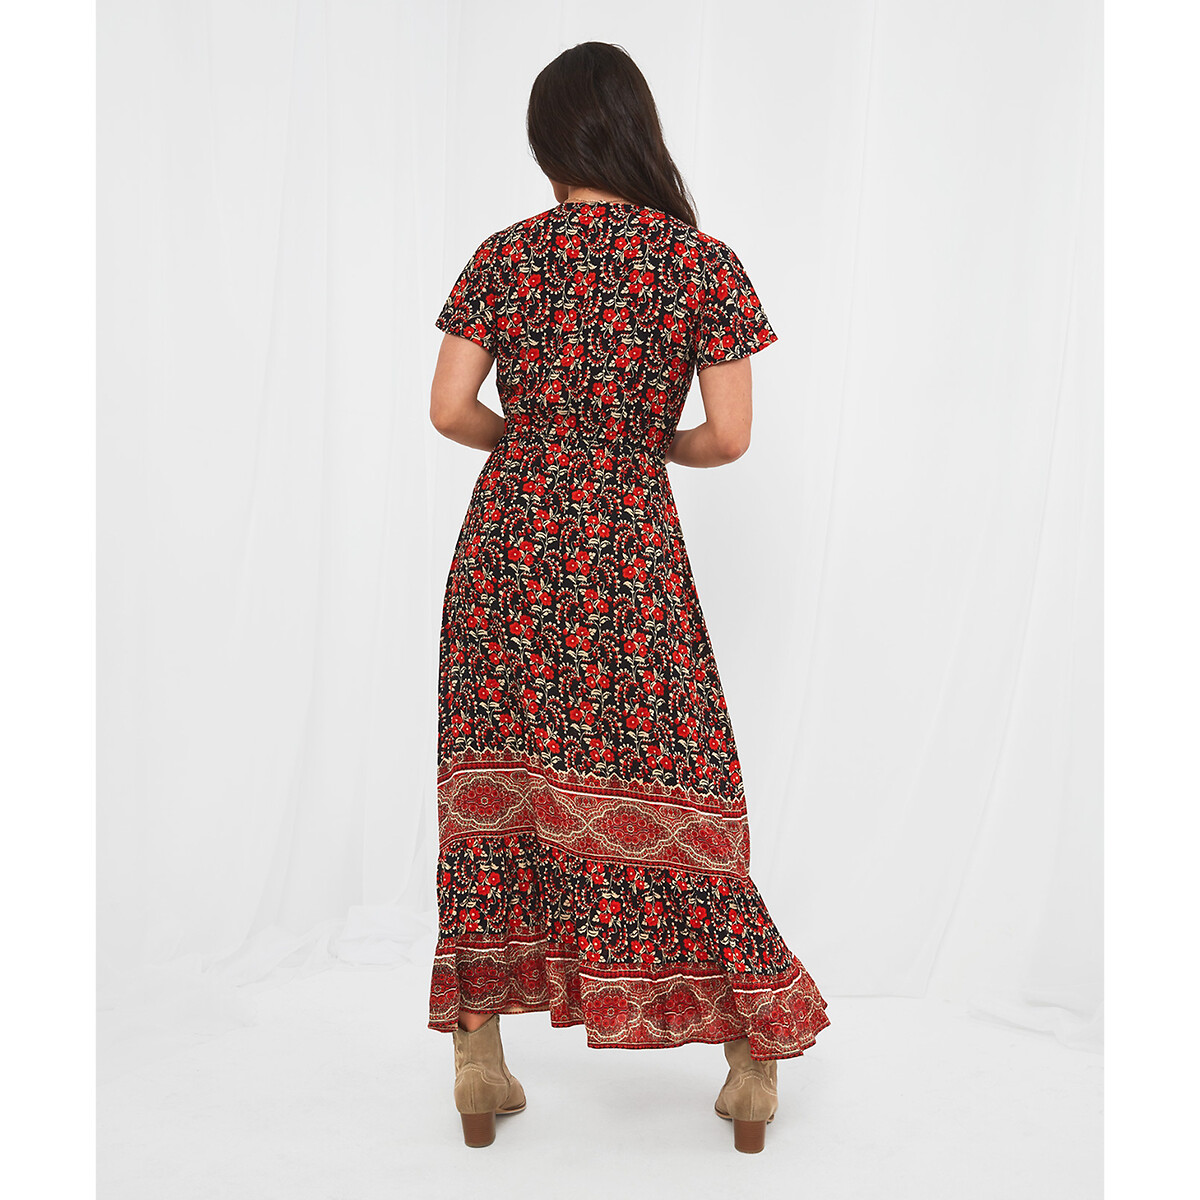 Платье JOE BROWNS Платье Длинное с богемным принтом короткие рукава 48 красный, размер 48 - фото 4